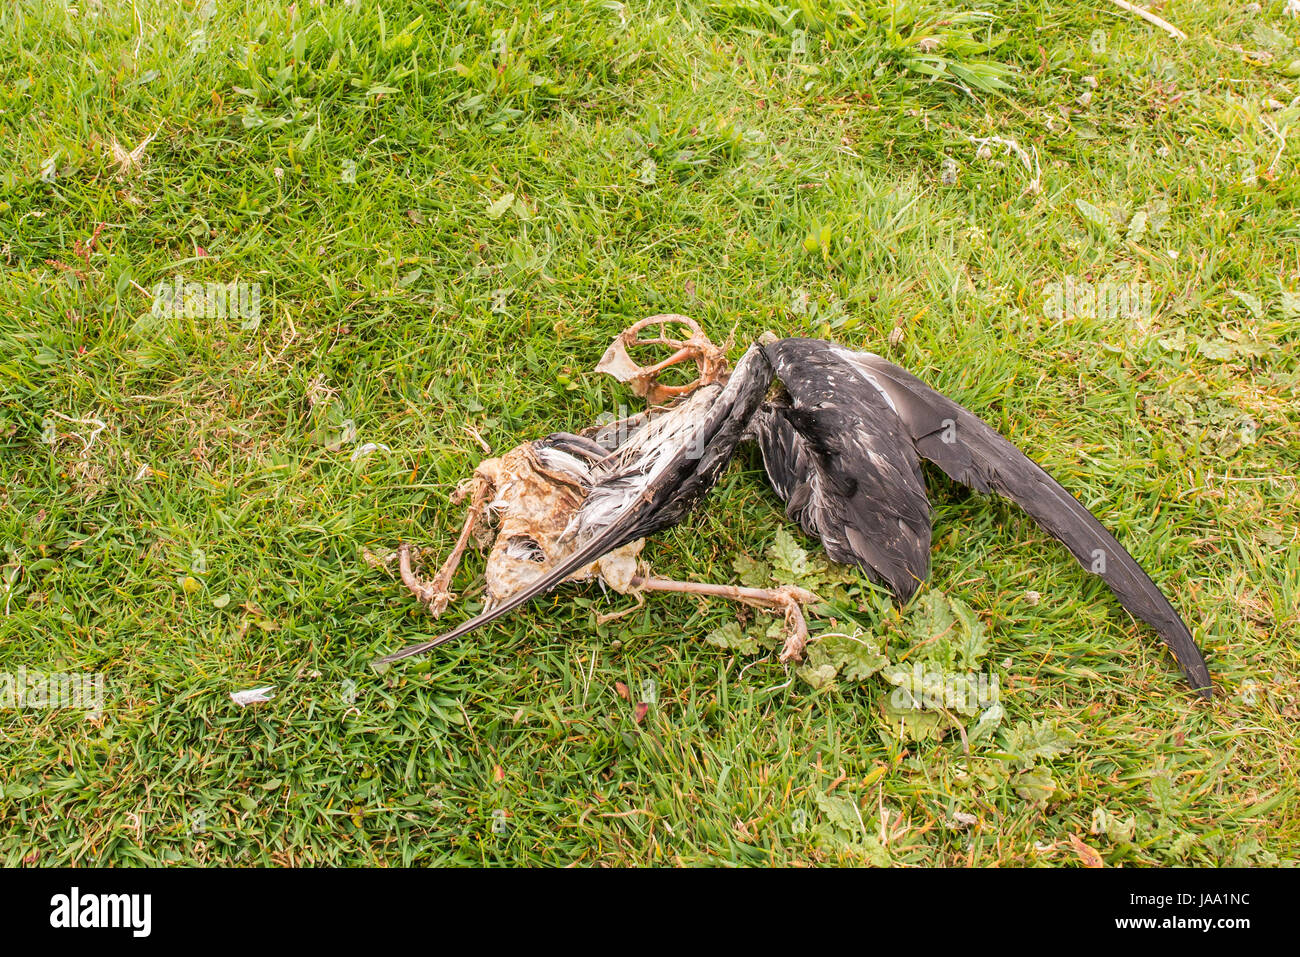 Toter Vogel - Manx Shearwater (Puffinus Puffinus) teilweise zerlegt zeigt Flügelfedern und exponierten Skelett. Vordatiert auf Skomer Island durch andere Vögel Stockfoto